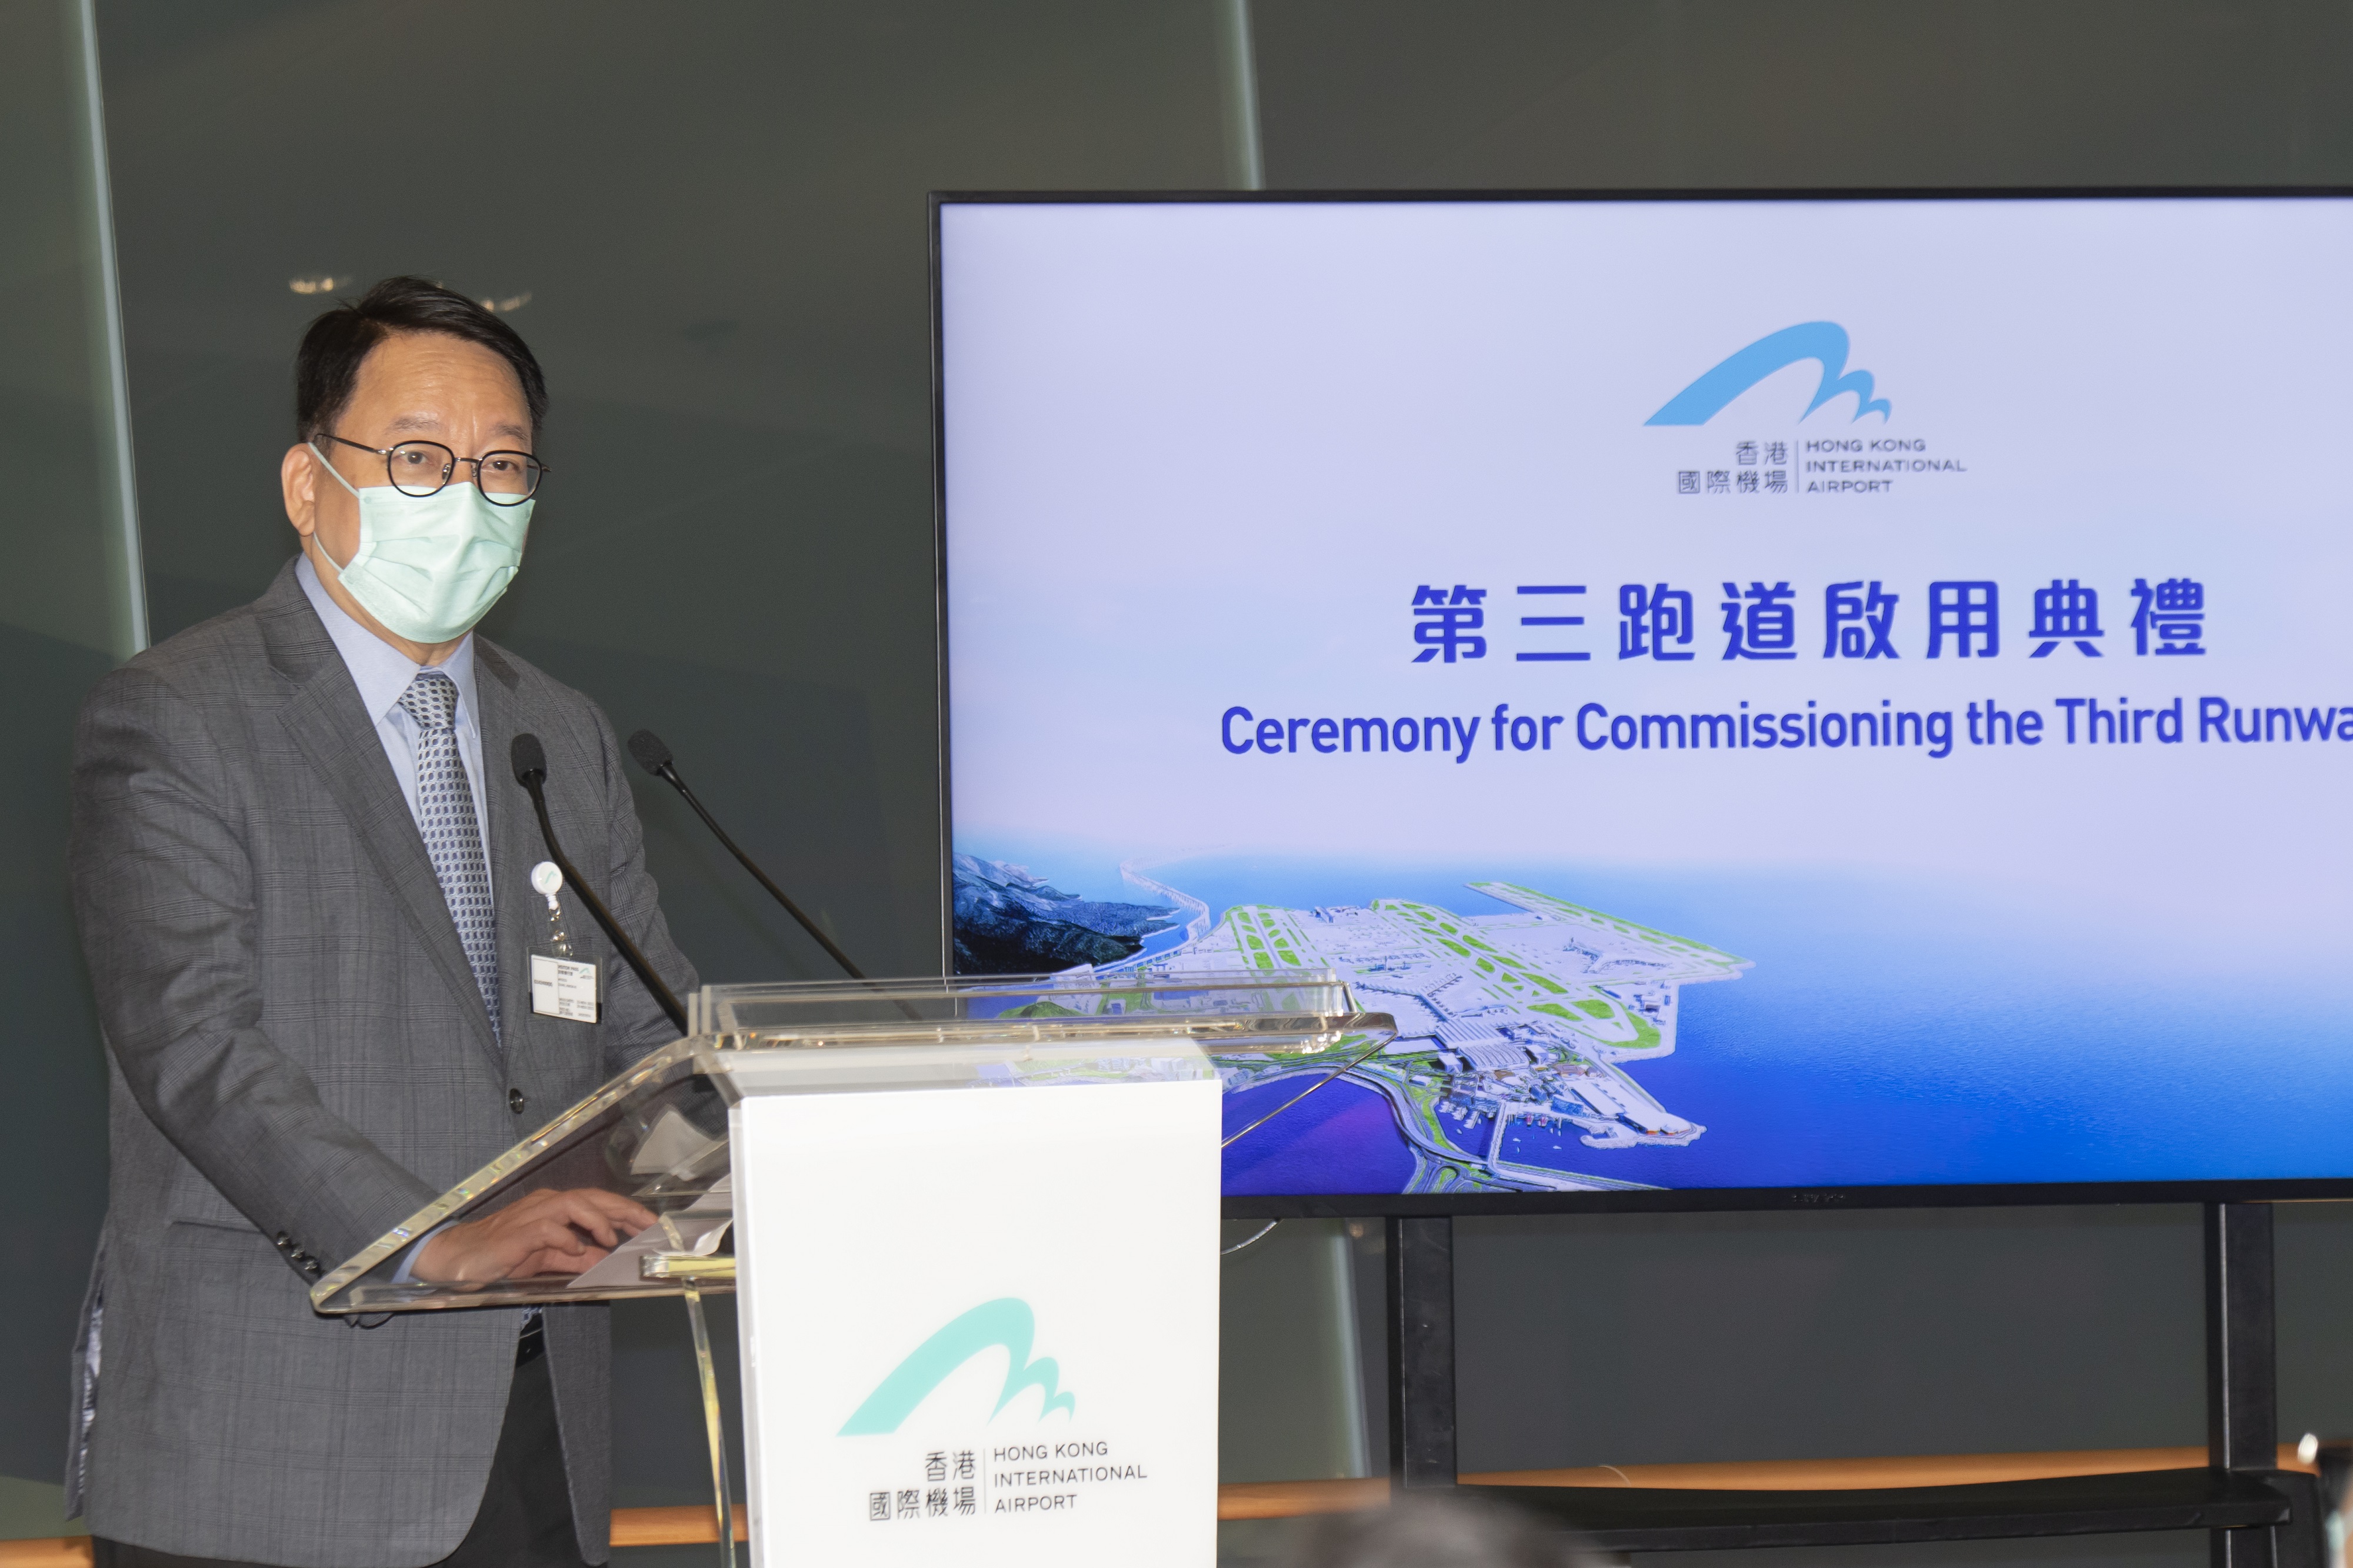 政務司司長陳國基在典禮致辭時表示，發展三跑道系統將能大幅提升香港國際機場的客貨運能力。